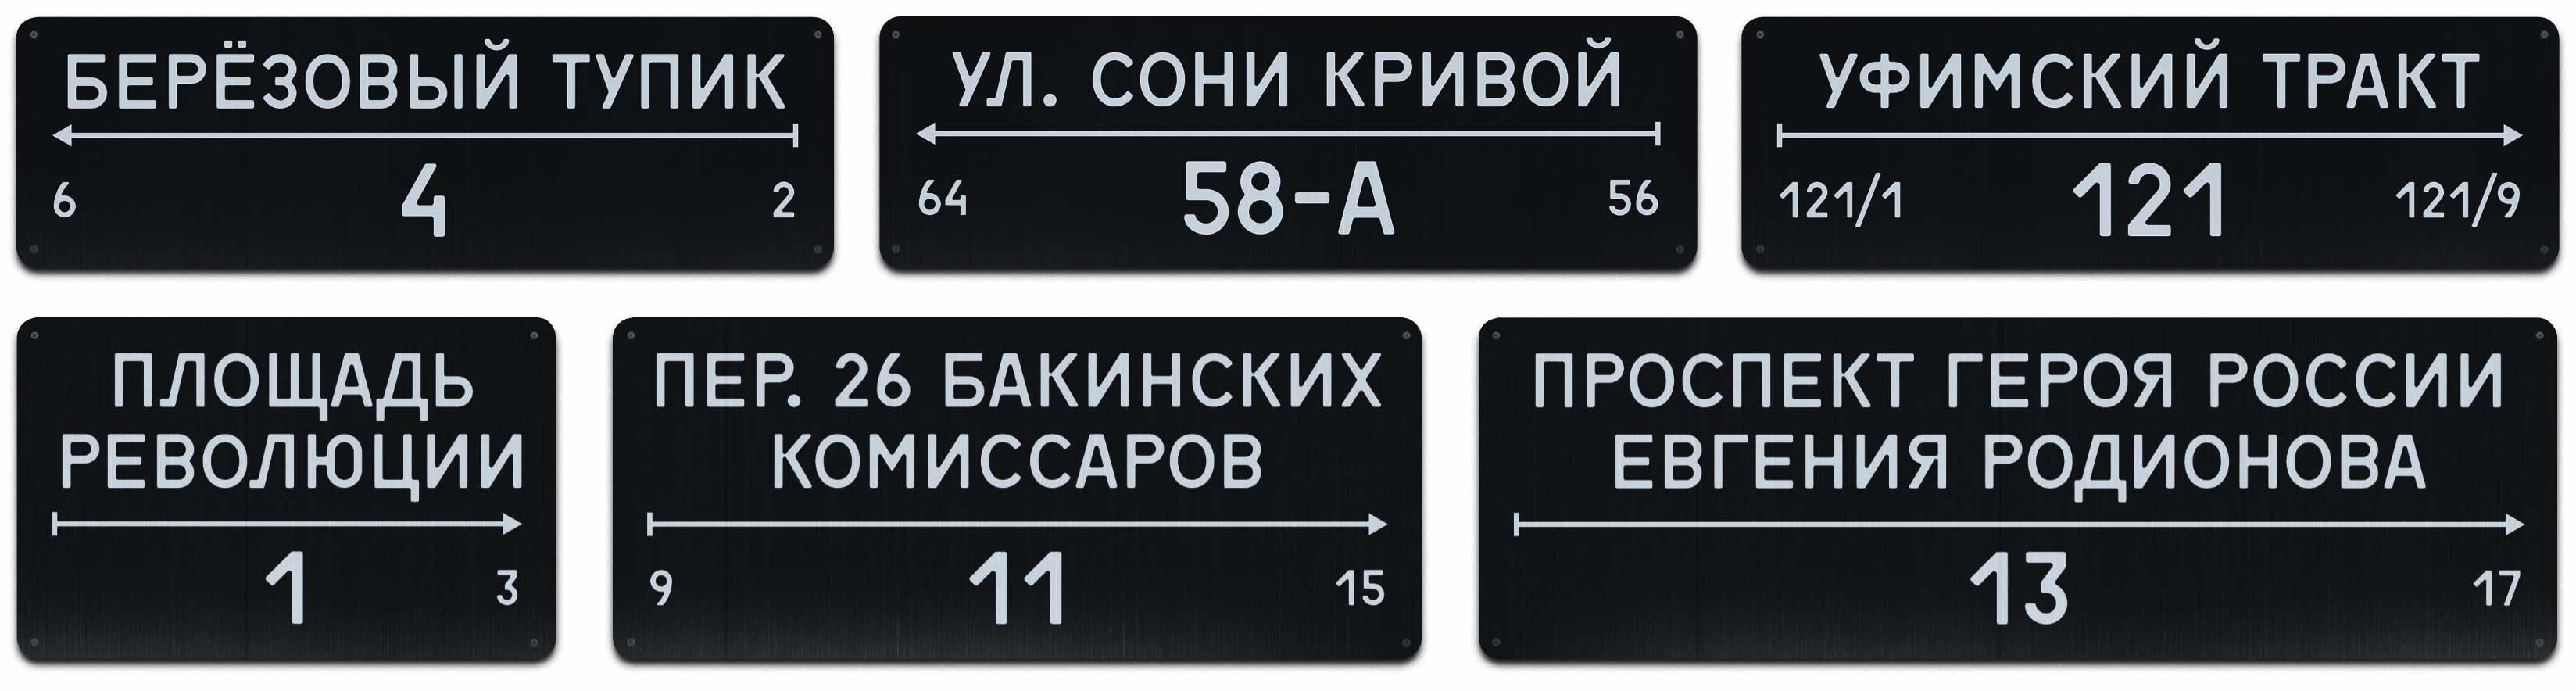 Адресные таблички Челябинска